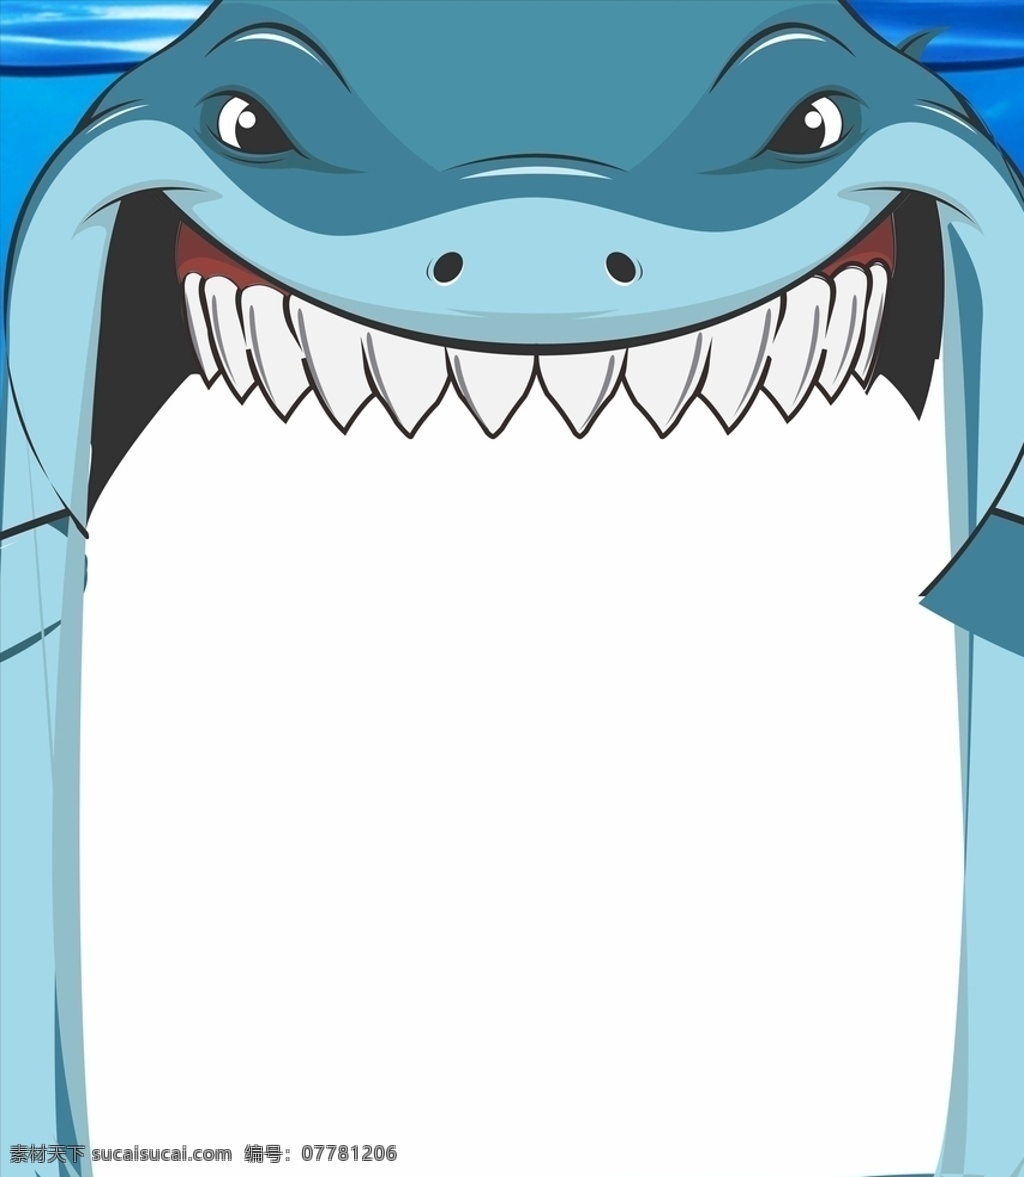 鲨鱼 游乐场 儿童 淘气堡 海 门 海洋 生物 卡通